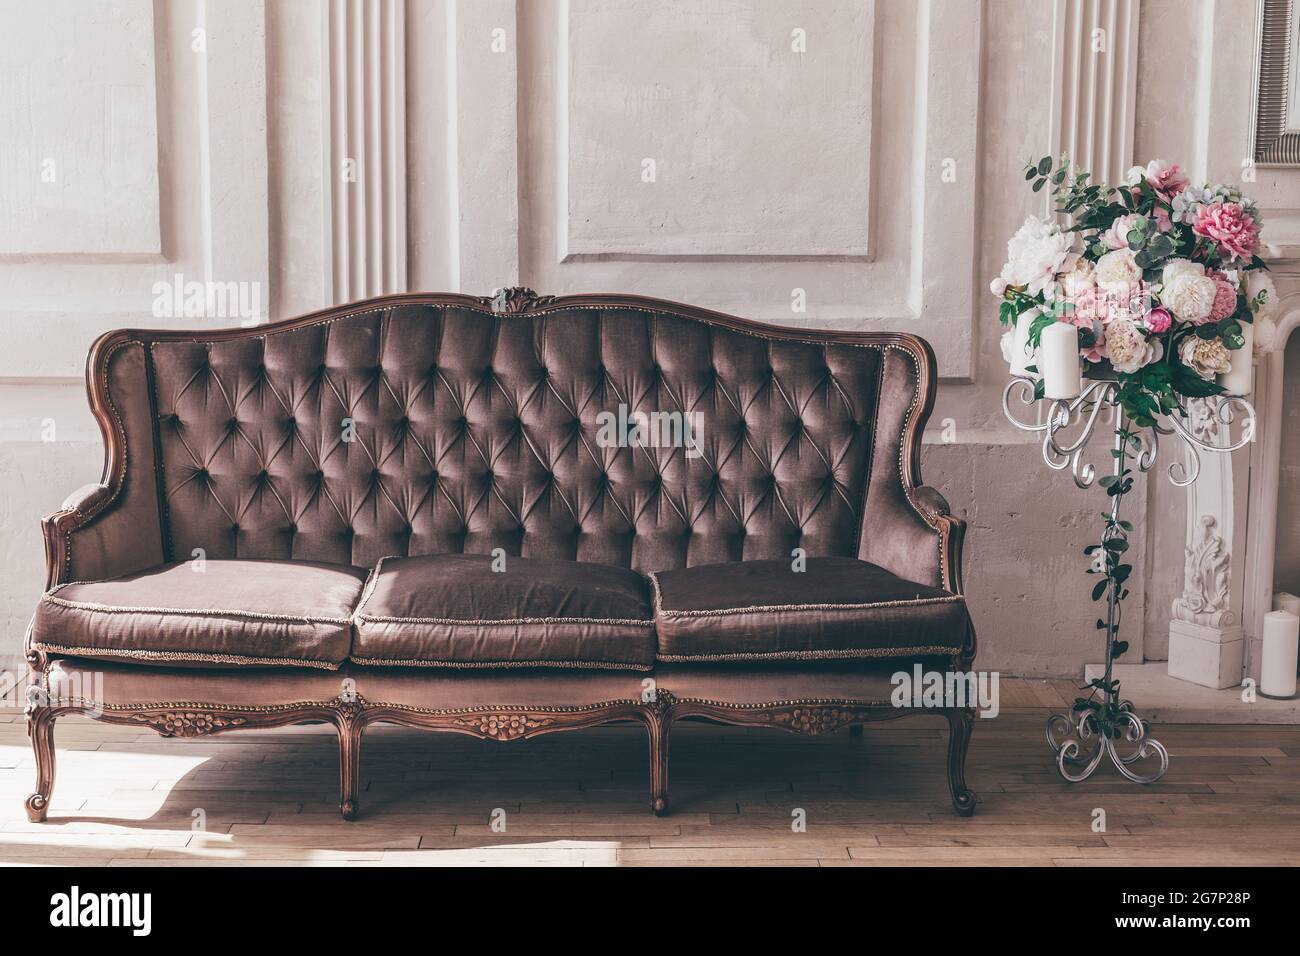 Canapé et support intérieur vintage avec fleurs dans un style chic et chic. Banque D'Images